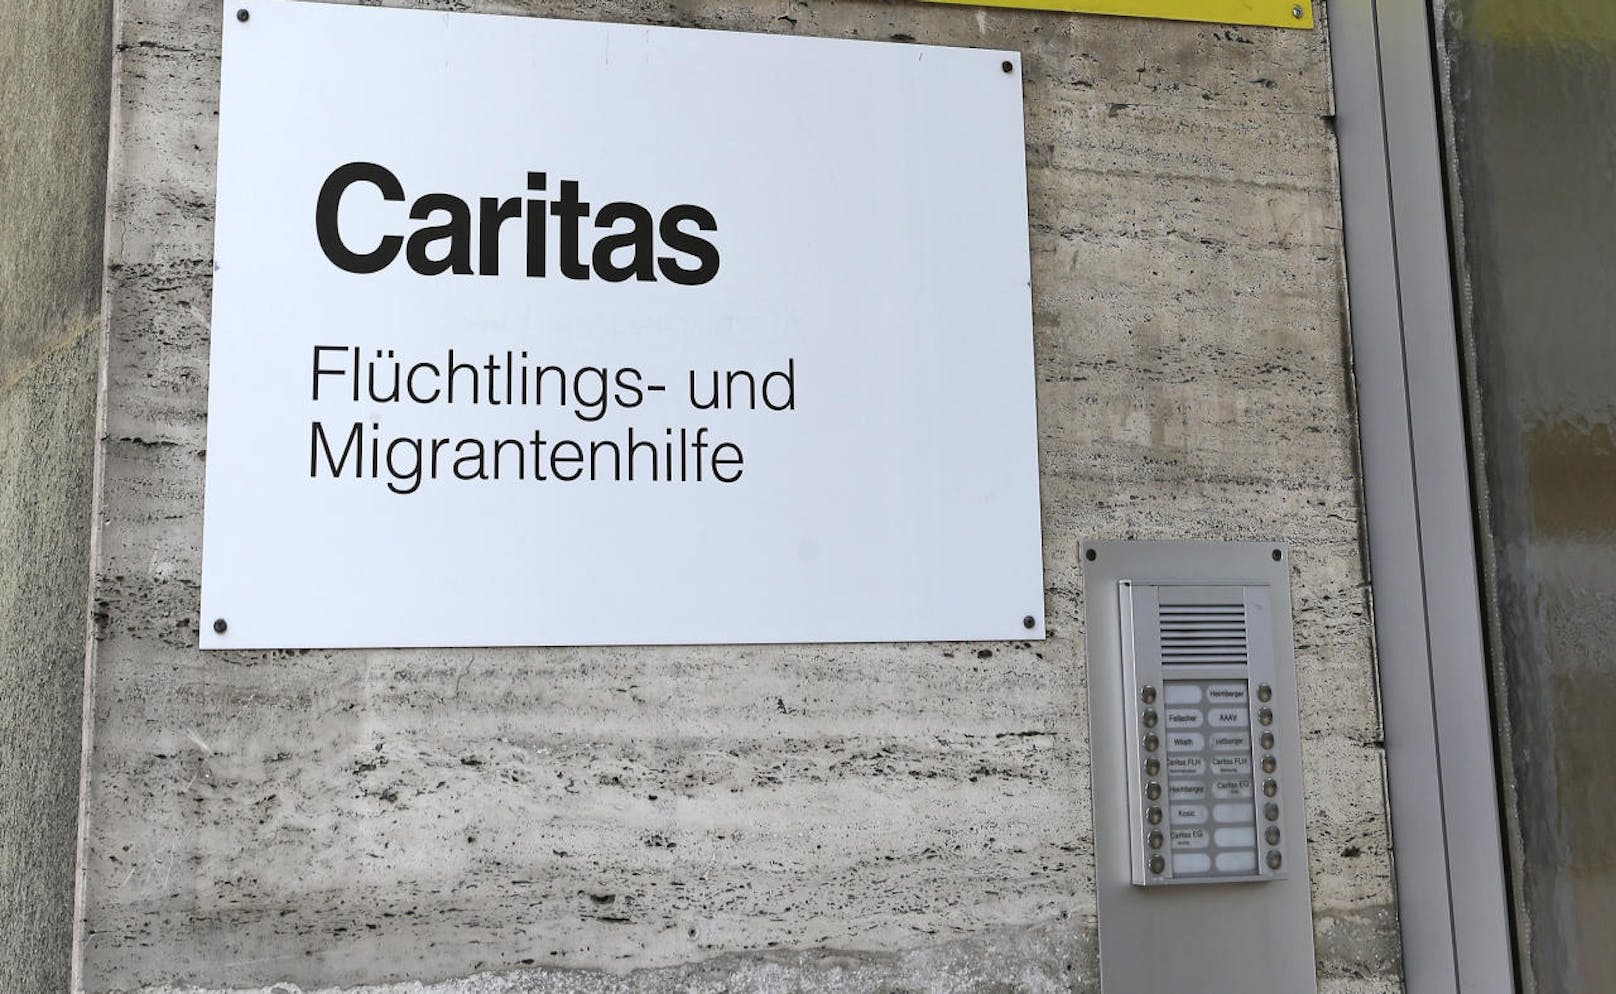 Die Regierung will NGOs wie der Caritas und SOS Mitmensch die Rechtsbetreuung von Asylwerbern entziehen